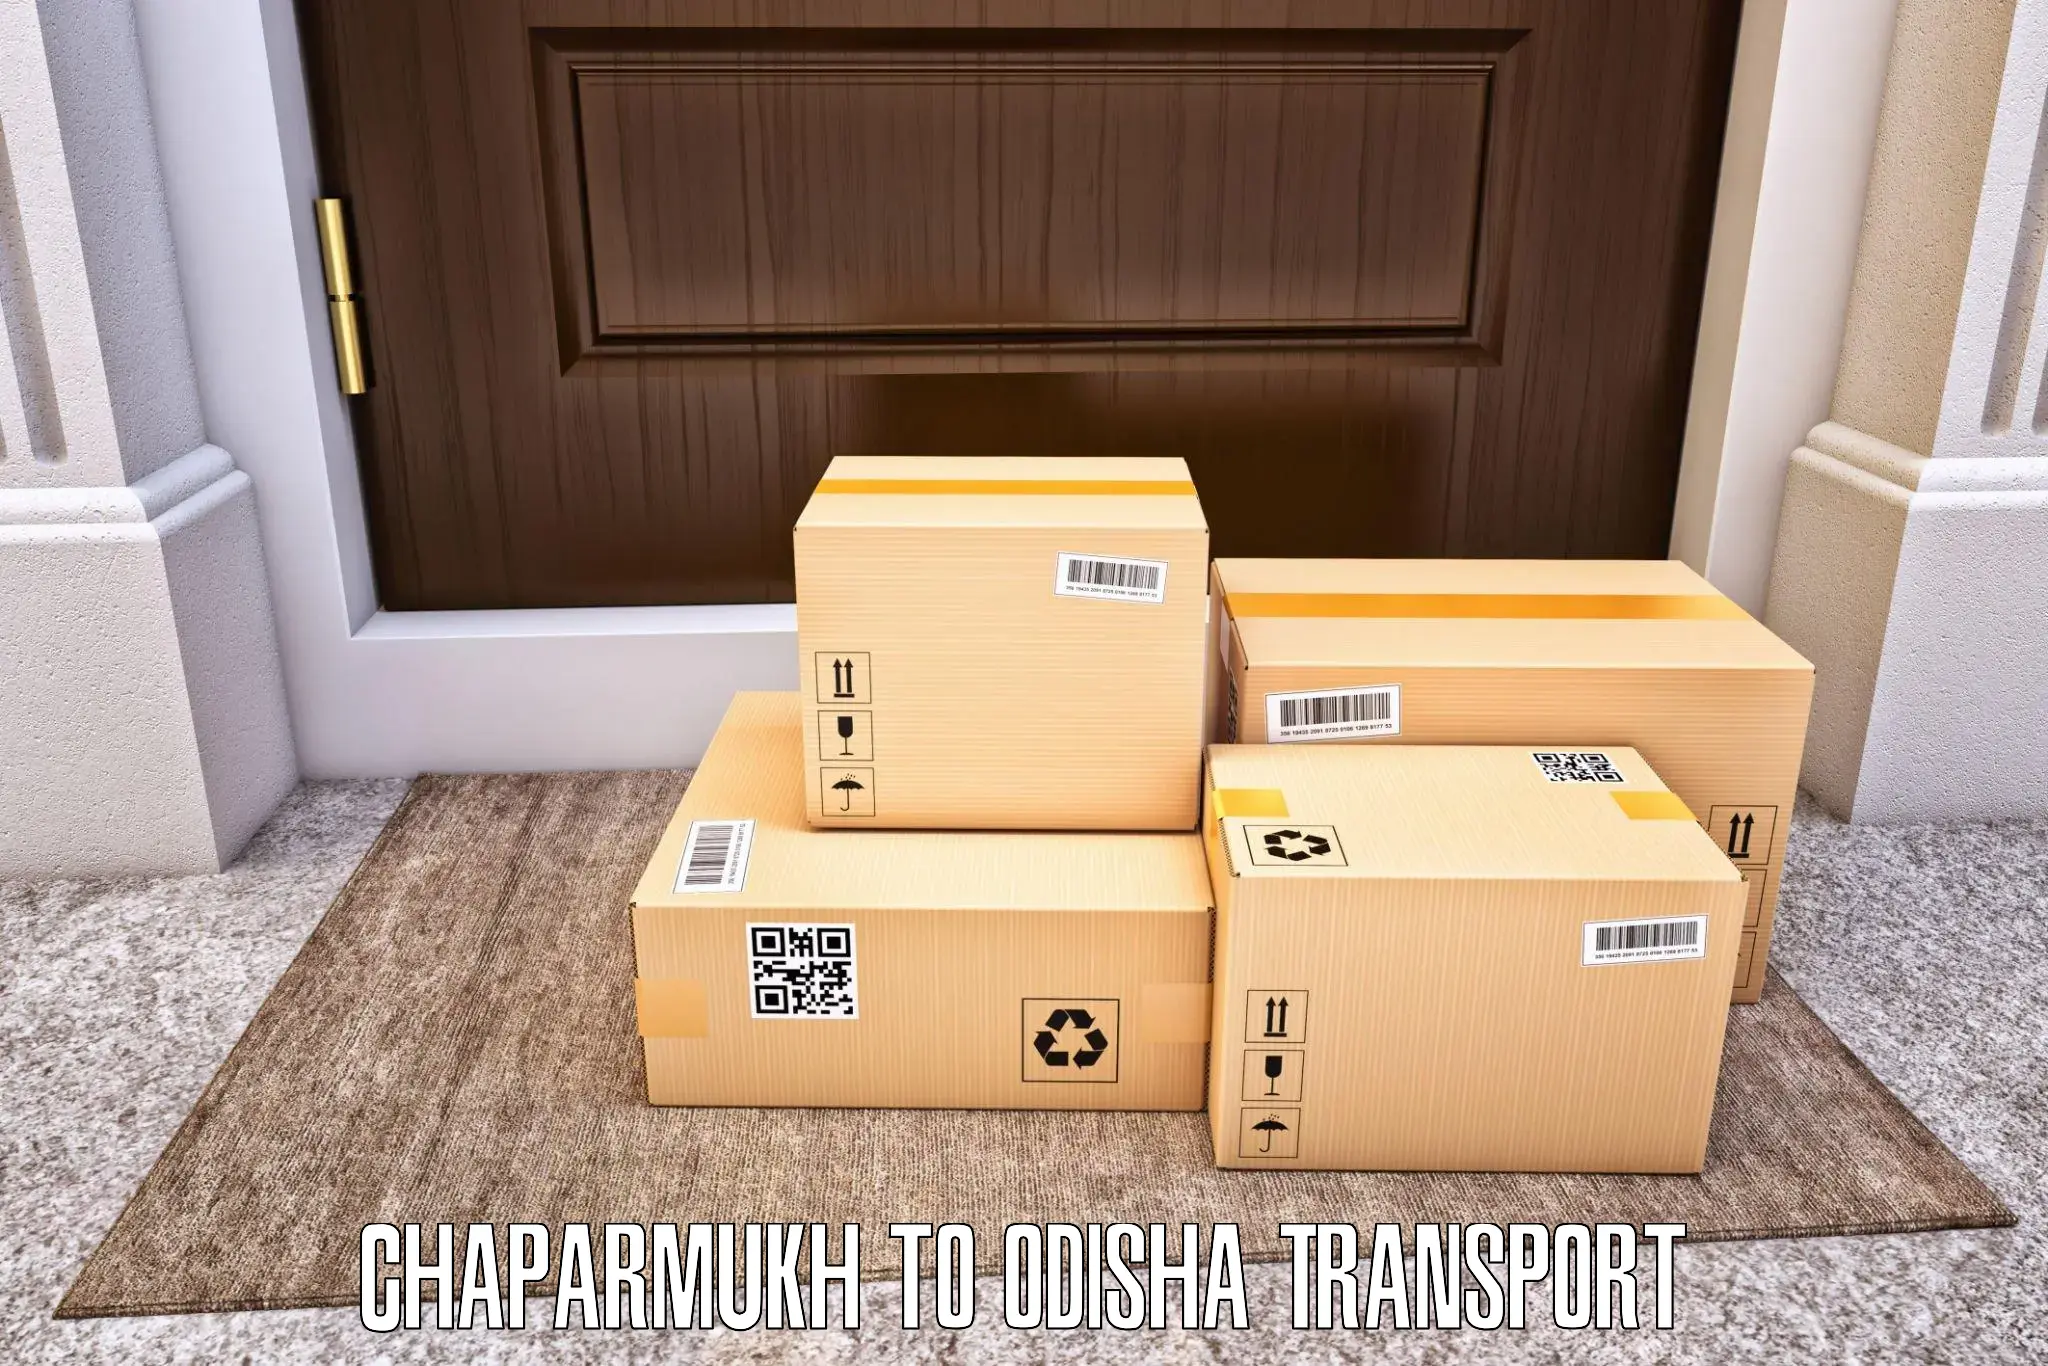 Bike shipping service Chaparmukh to Thakurmunda